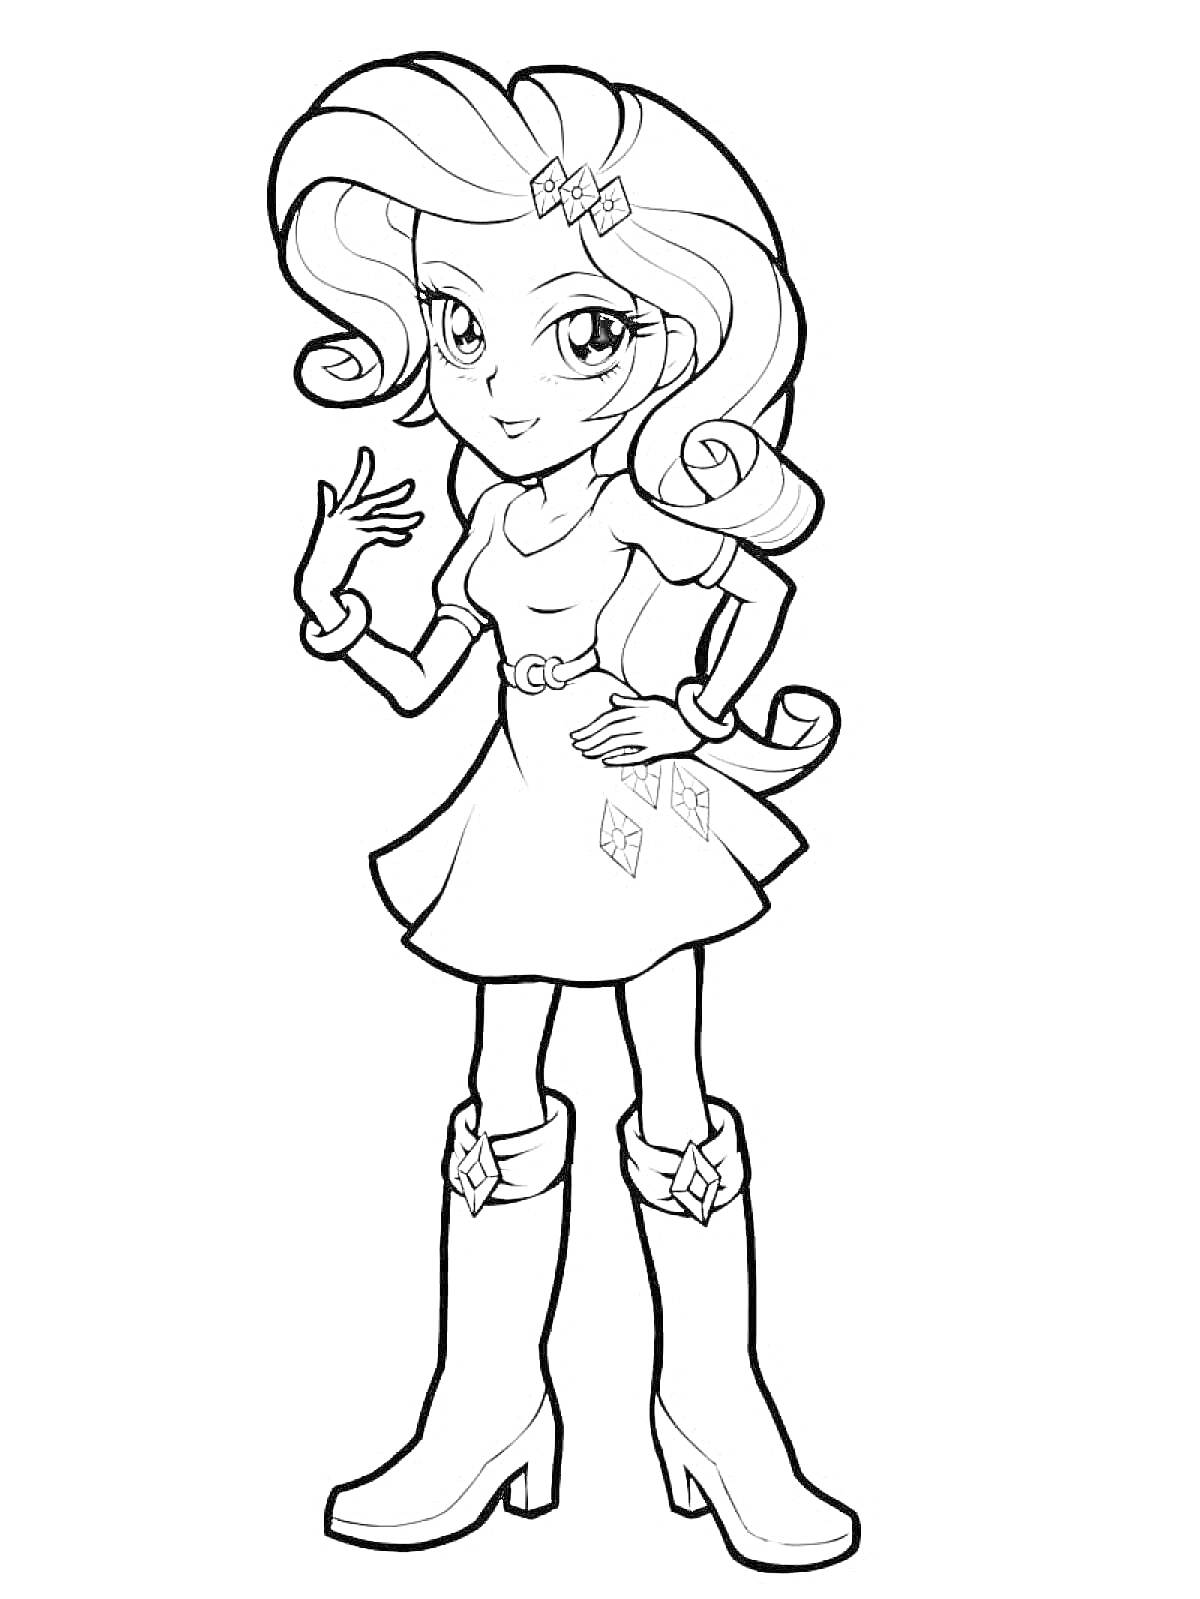 Девушка с вьющимися волосами, двумя заколками-бантами, в платье с украшением на поясе и ботинках на каблуке